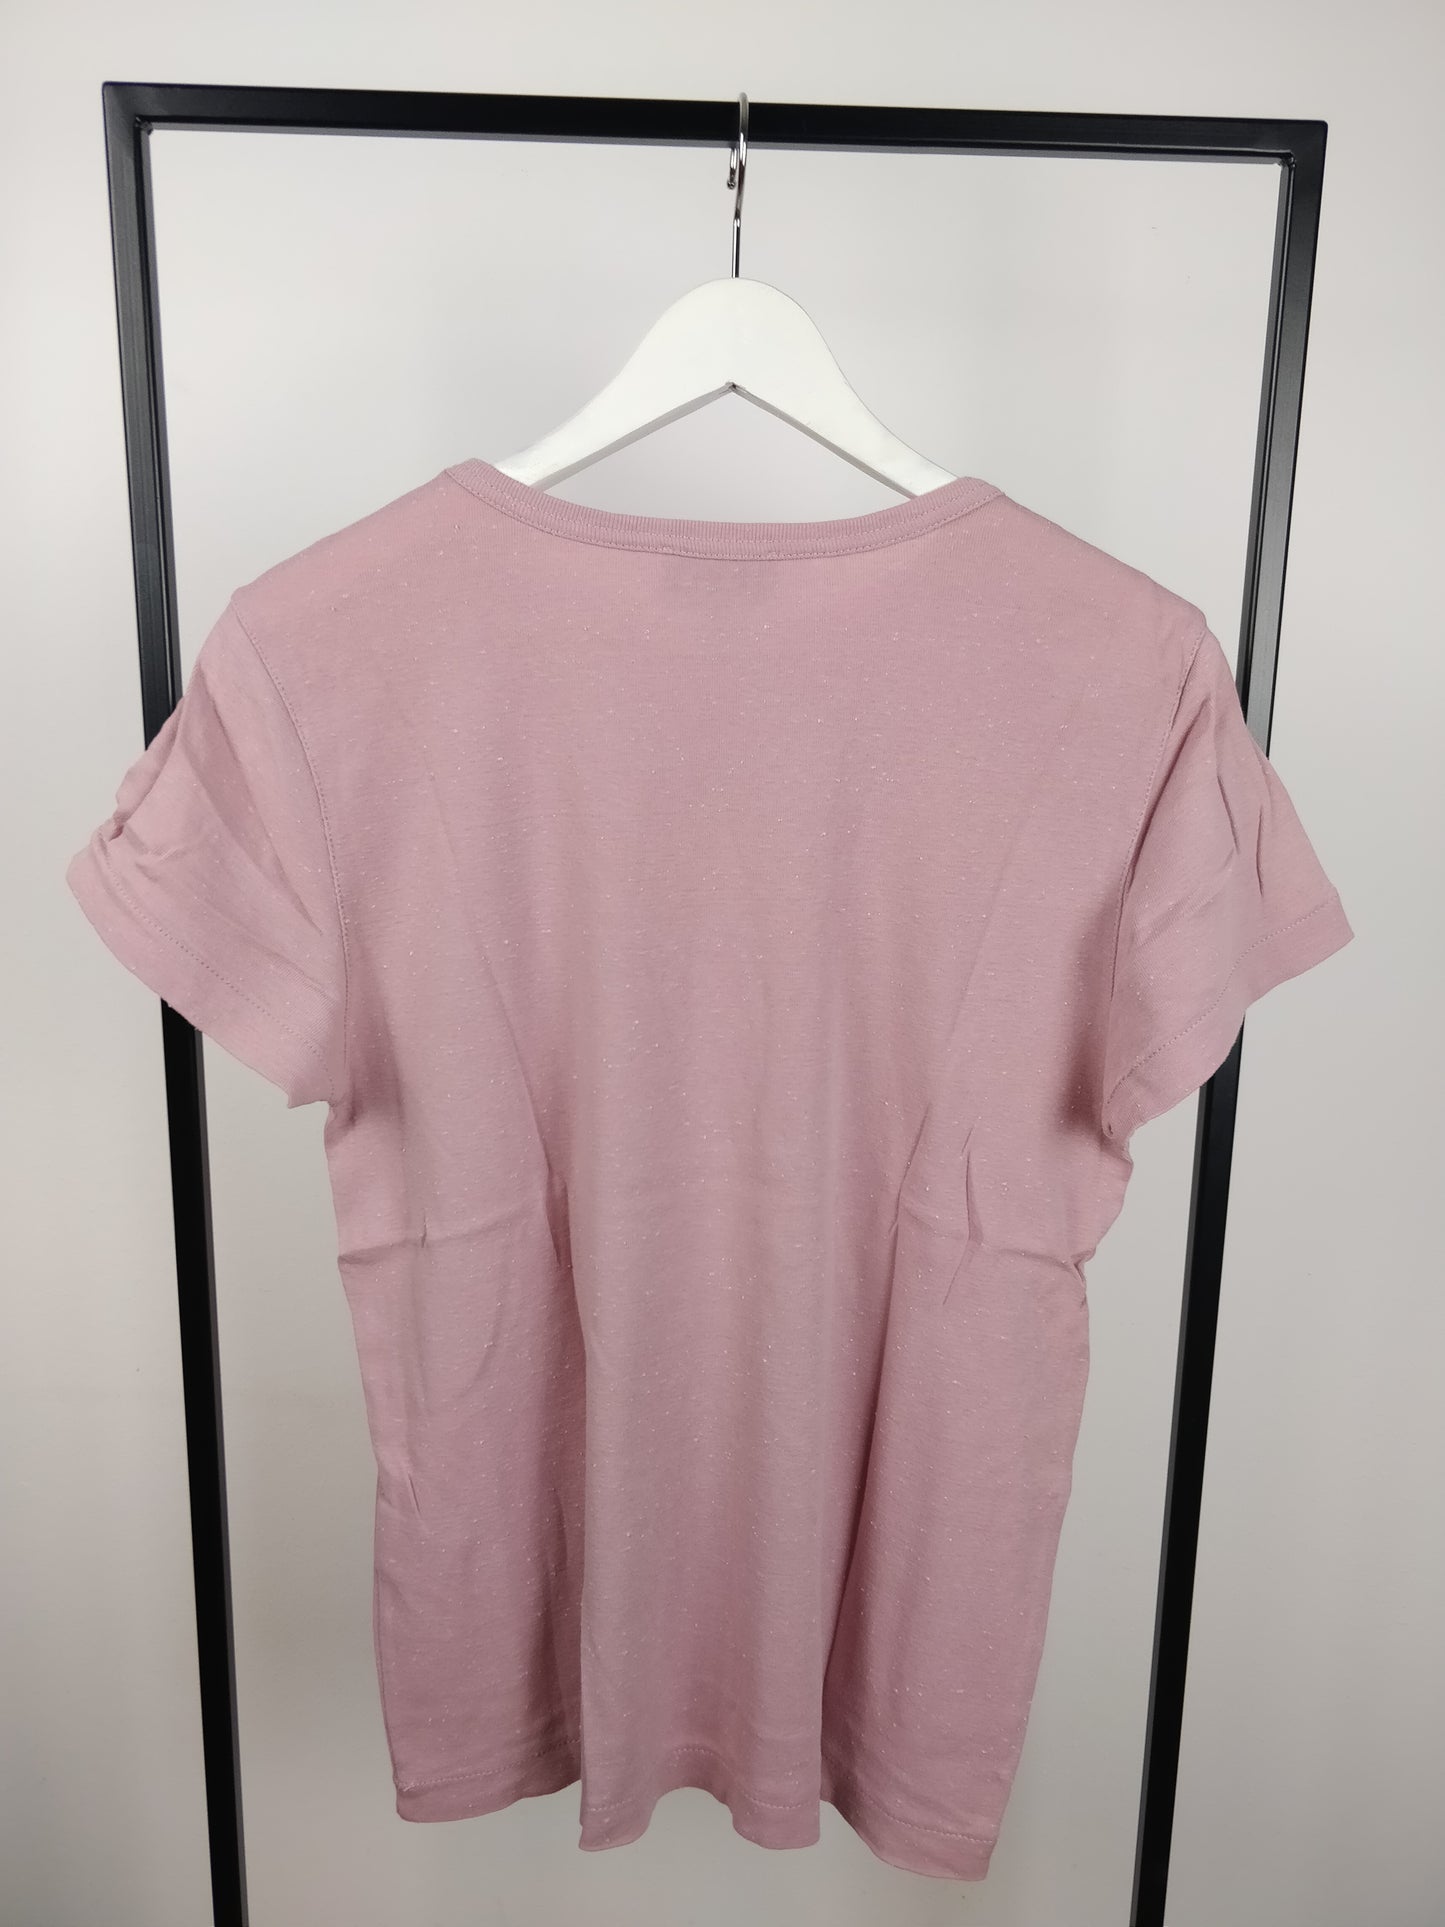 Light pink T-shirt